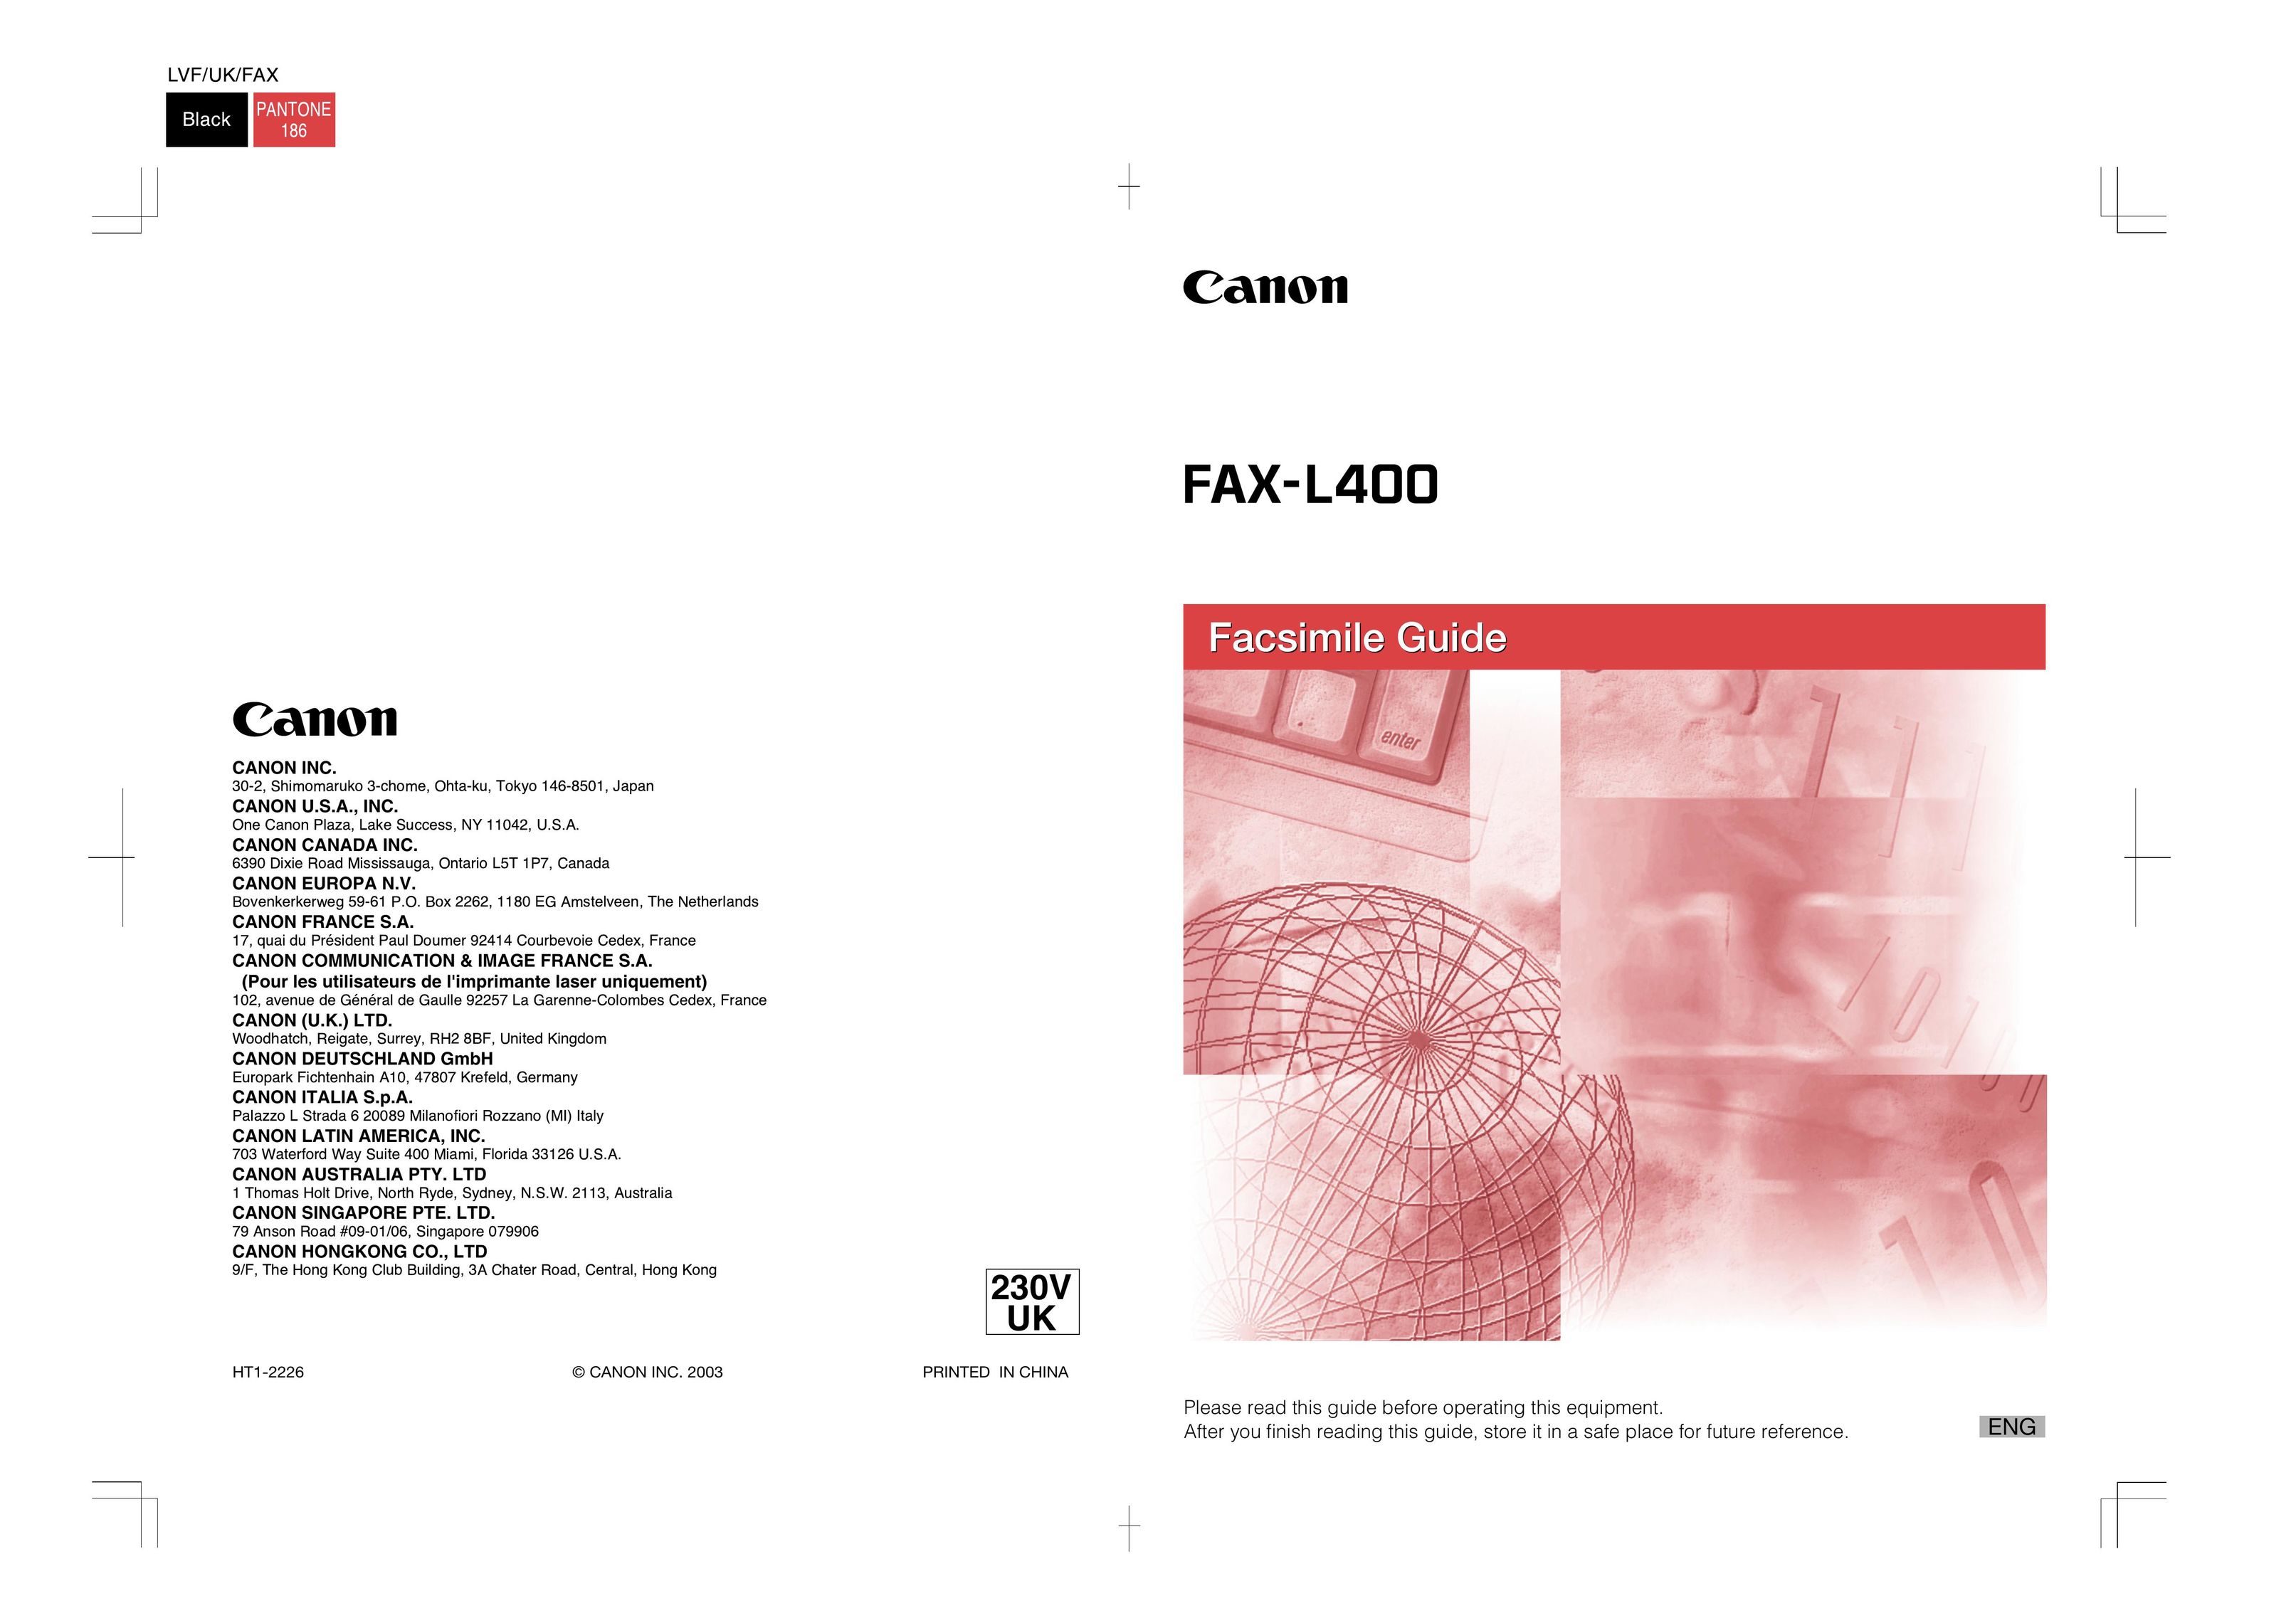 Canon FAX-L400 Fax Machine User Manual